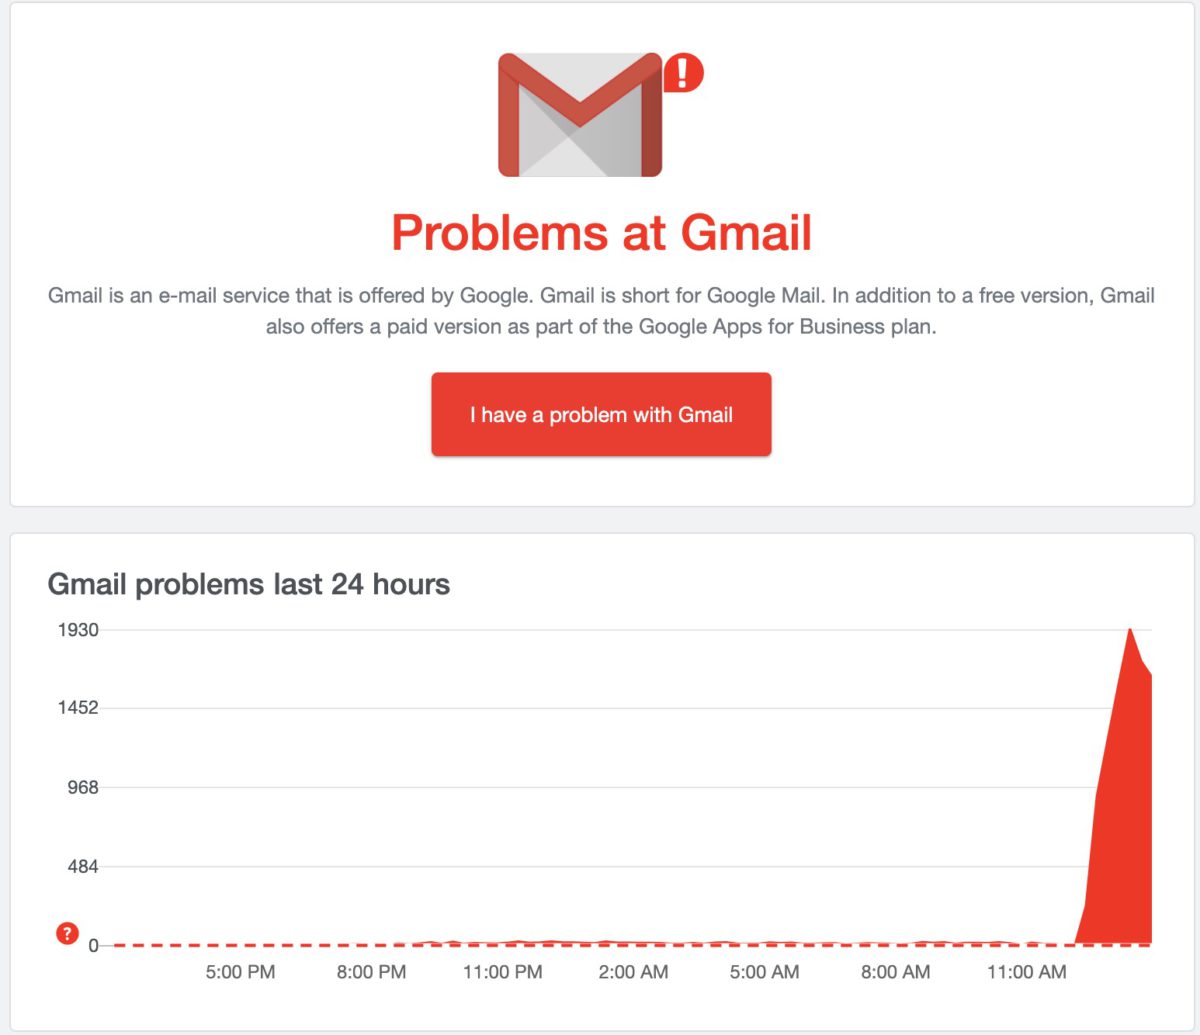 網絡服監察網站 DownDetector 亦顯示 Gmail 出現大量服務無法使用的舉報。